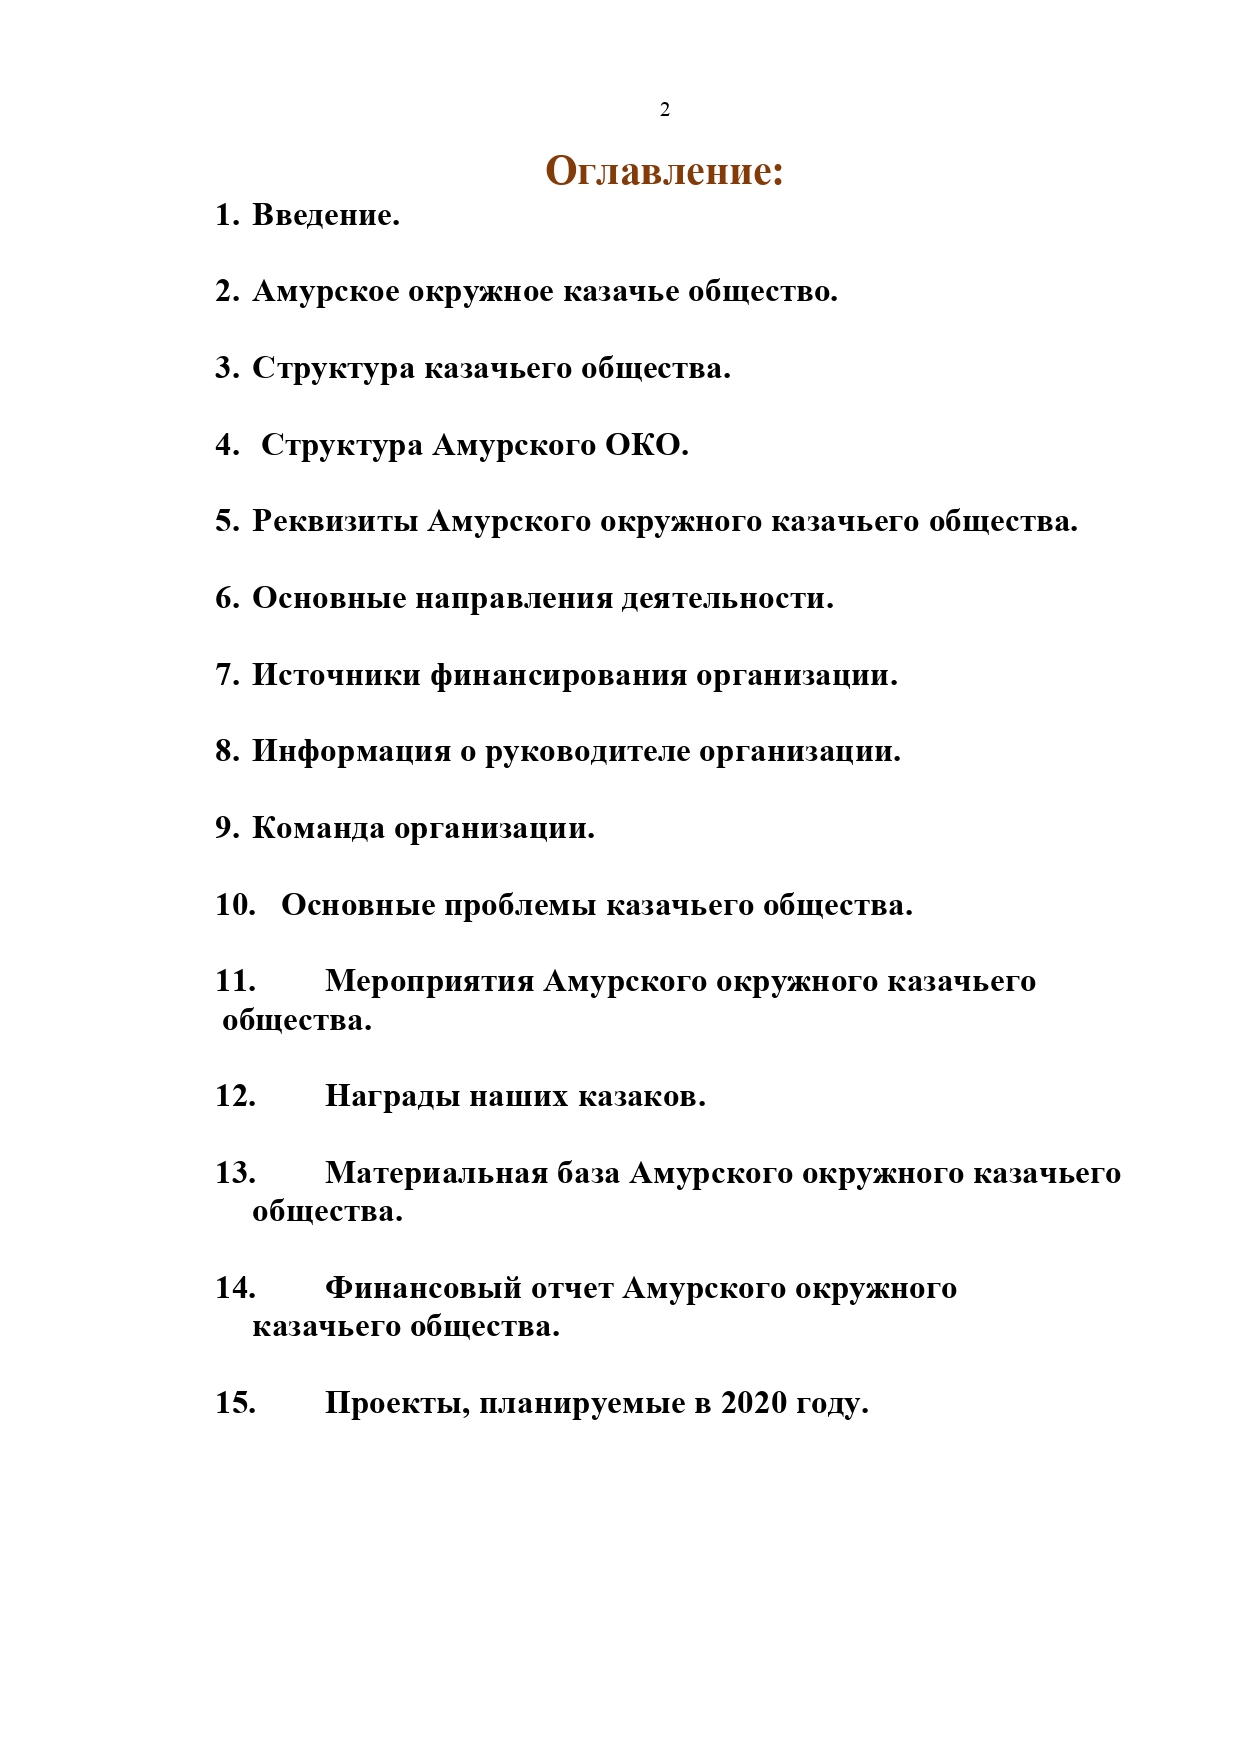 Публичный годовой отчет Амурского окружного казачьего общества за 2019 год Page 0002